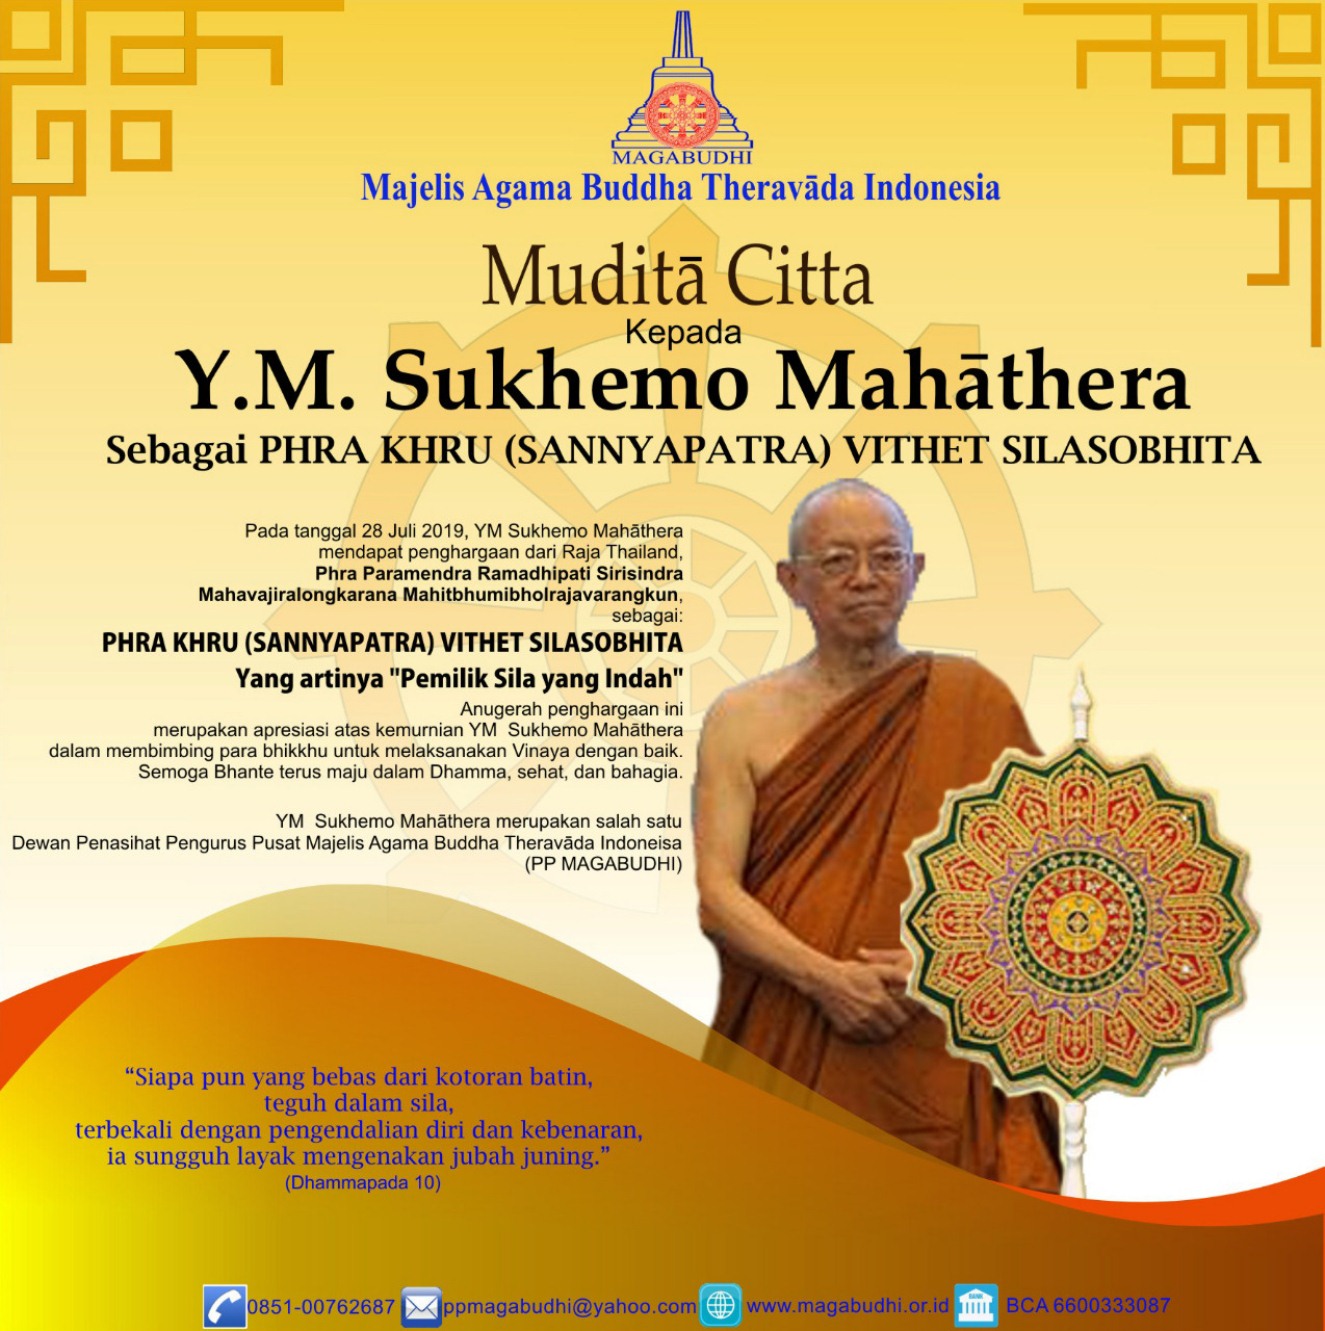 Turut Mudita Citta kepada Y.M. Bhikkhu Sukhemo Mahathera sebagai PHRA KHRU (SANNYAPATRA) VITHET SILASOBHITA